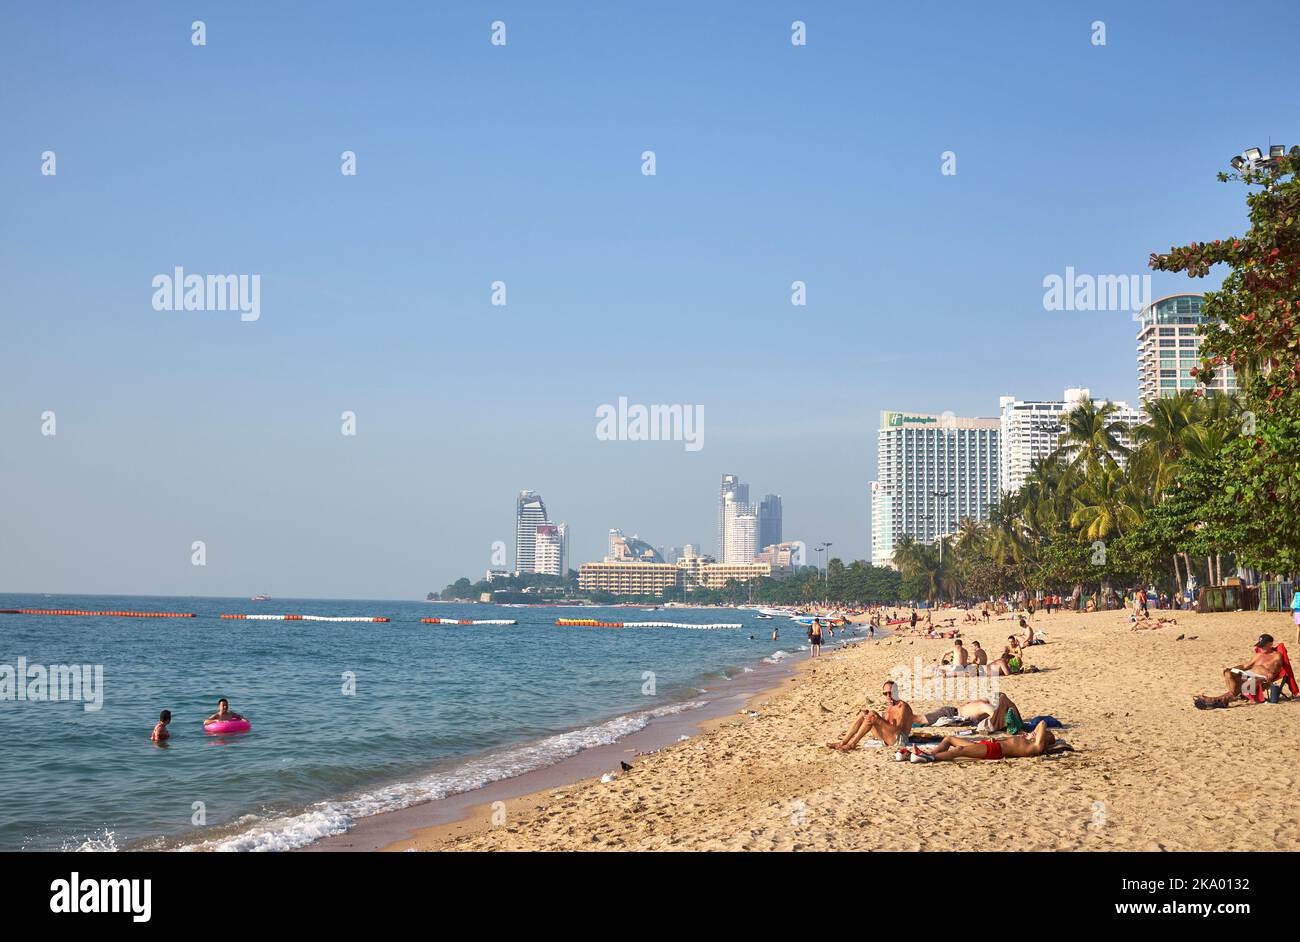 Turisti sul lungomare sabbioso di Pattaya, Thailandia Foto Stock